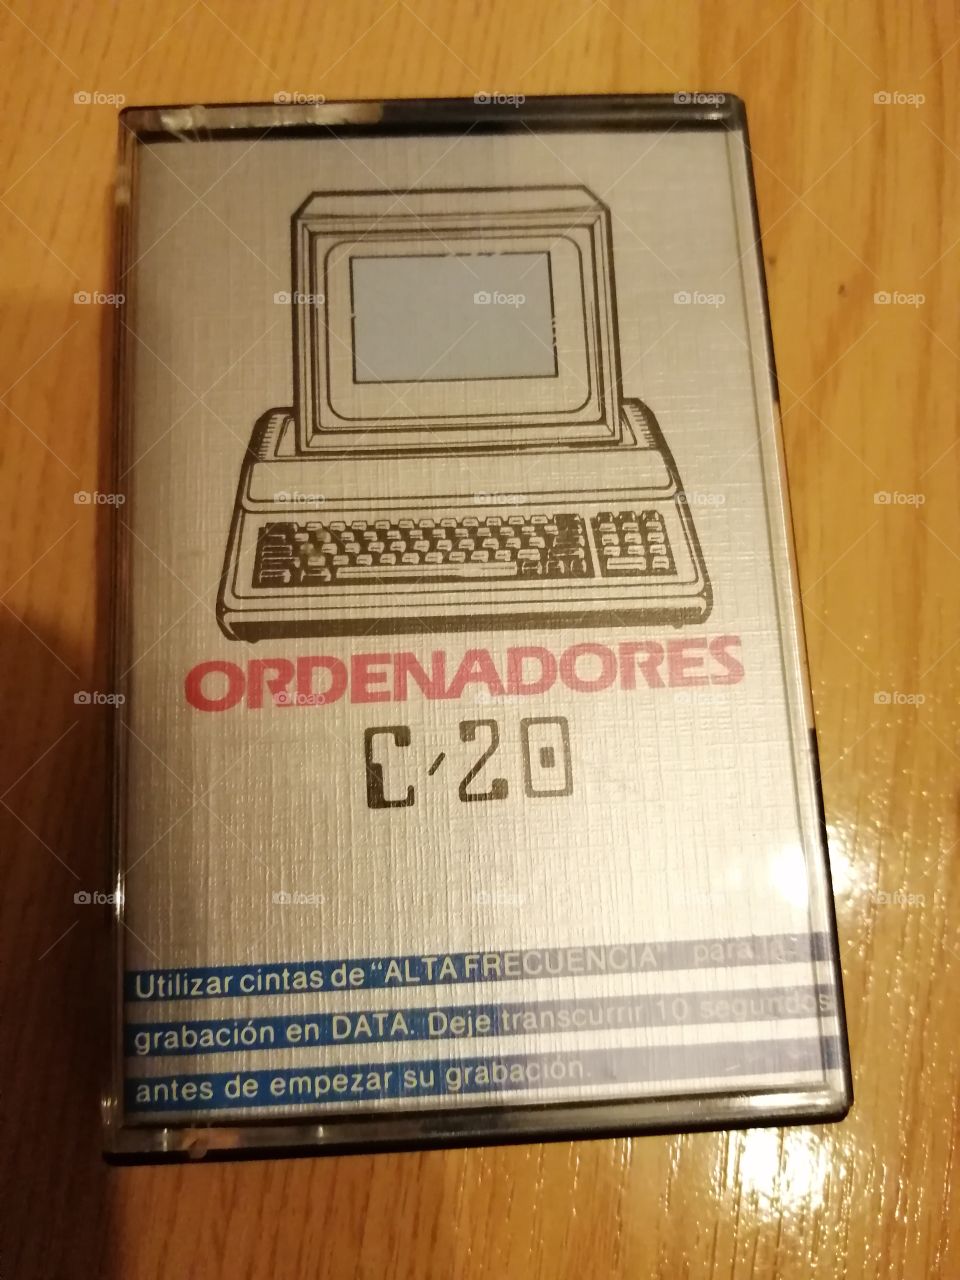 Ordenadors C-20. Cinta de cassette per ordinadors